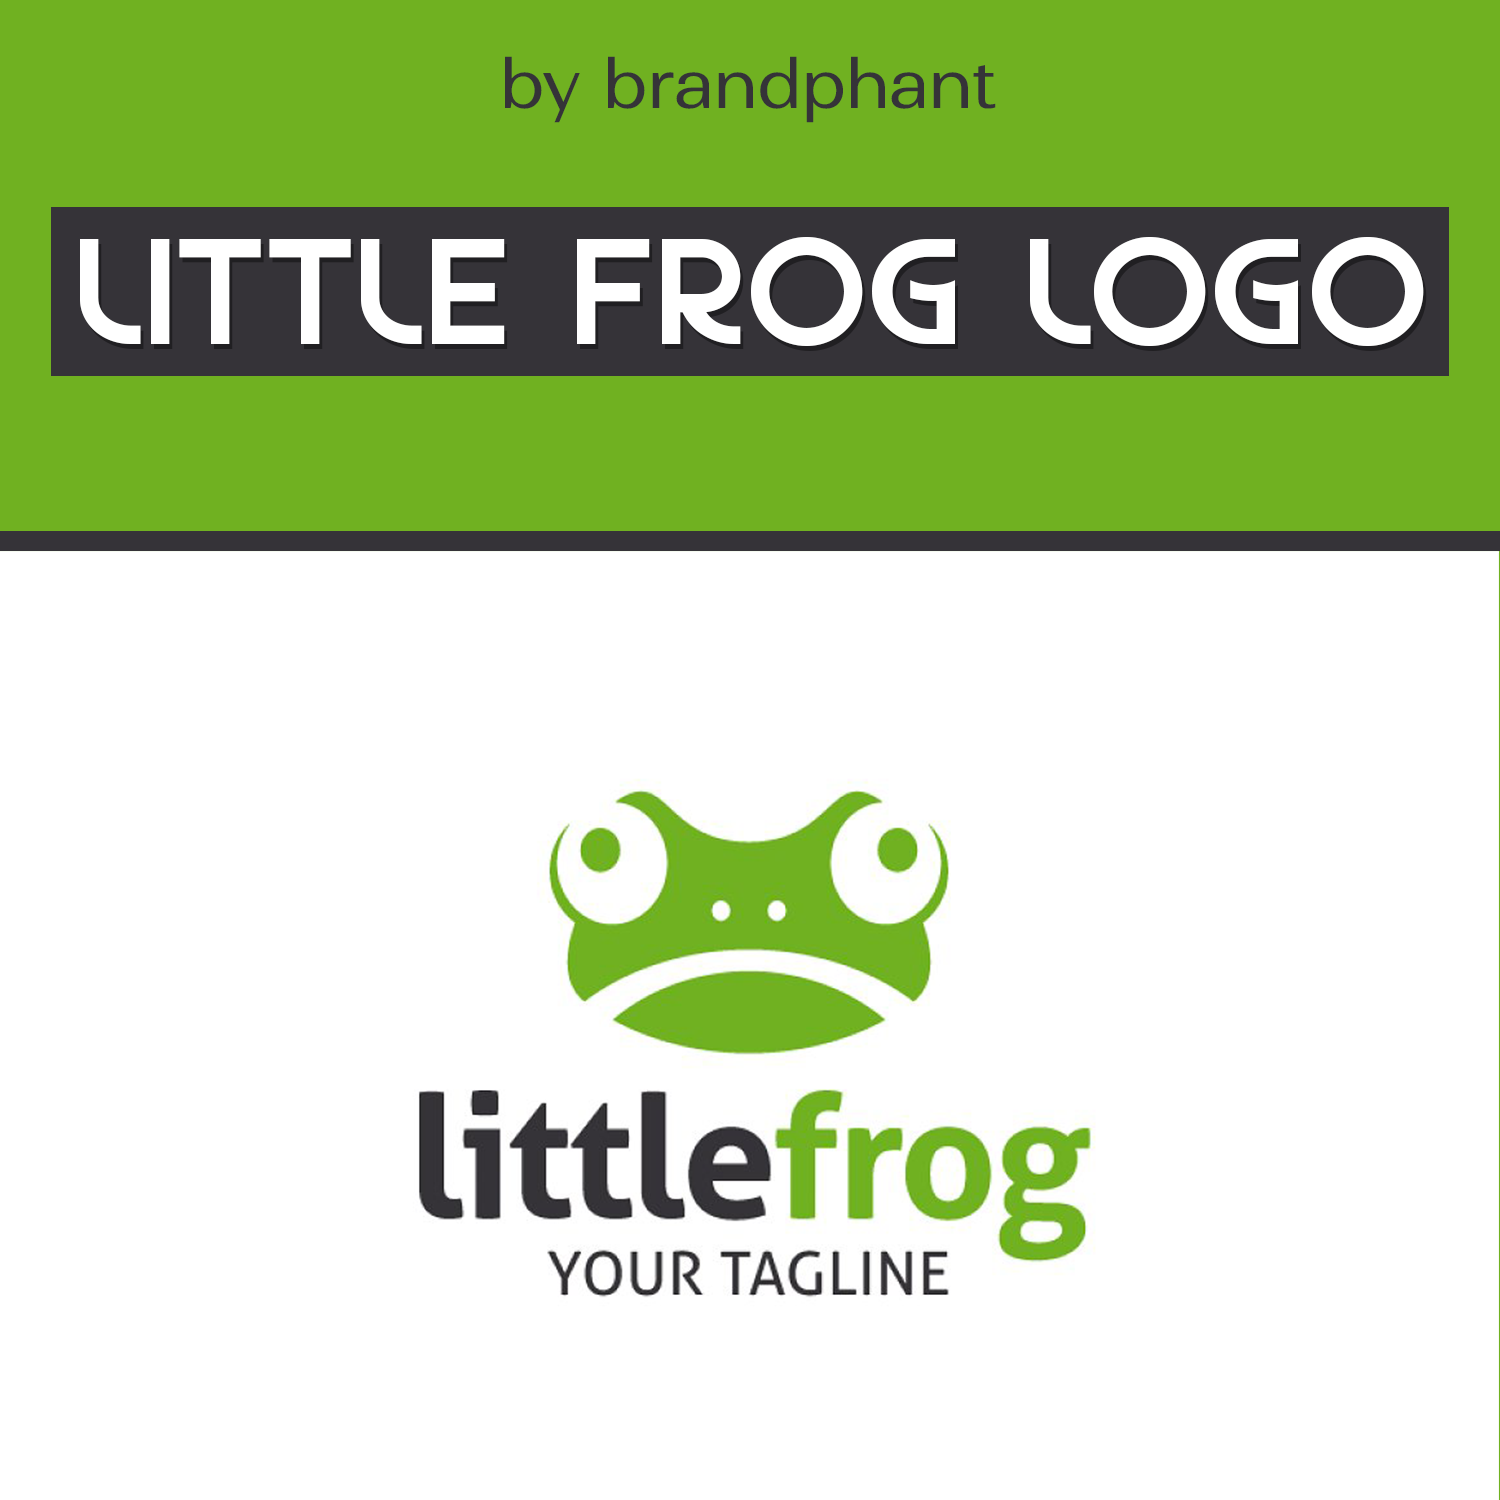 Little Frog Logo cover.